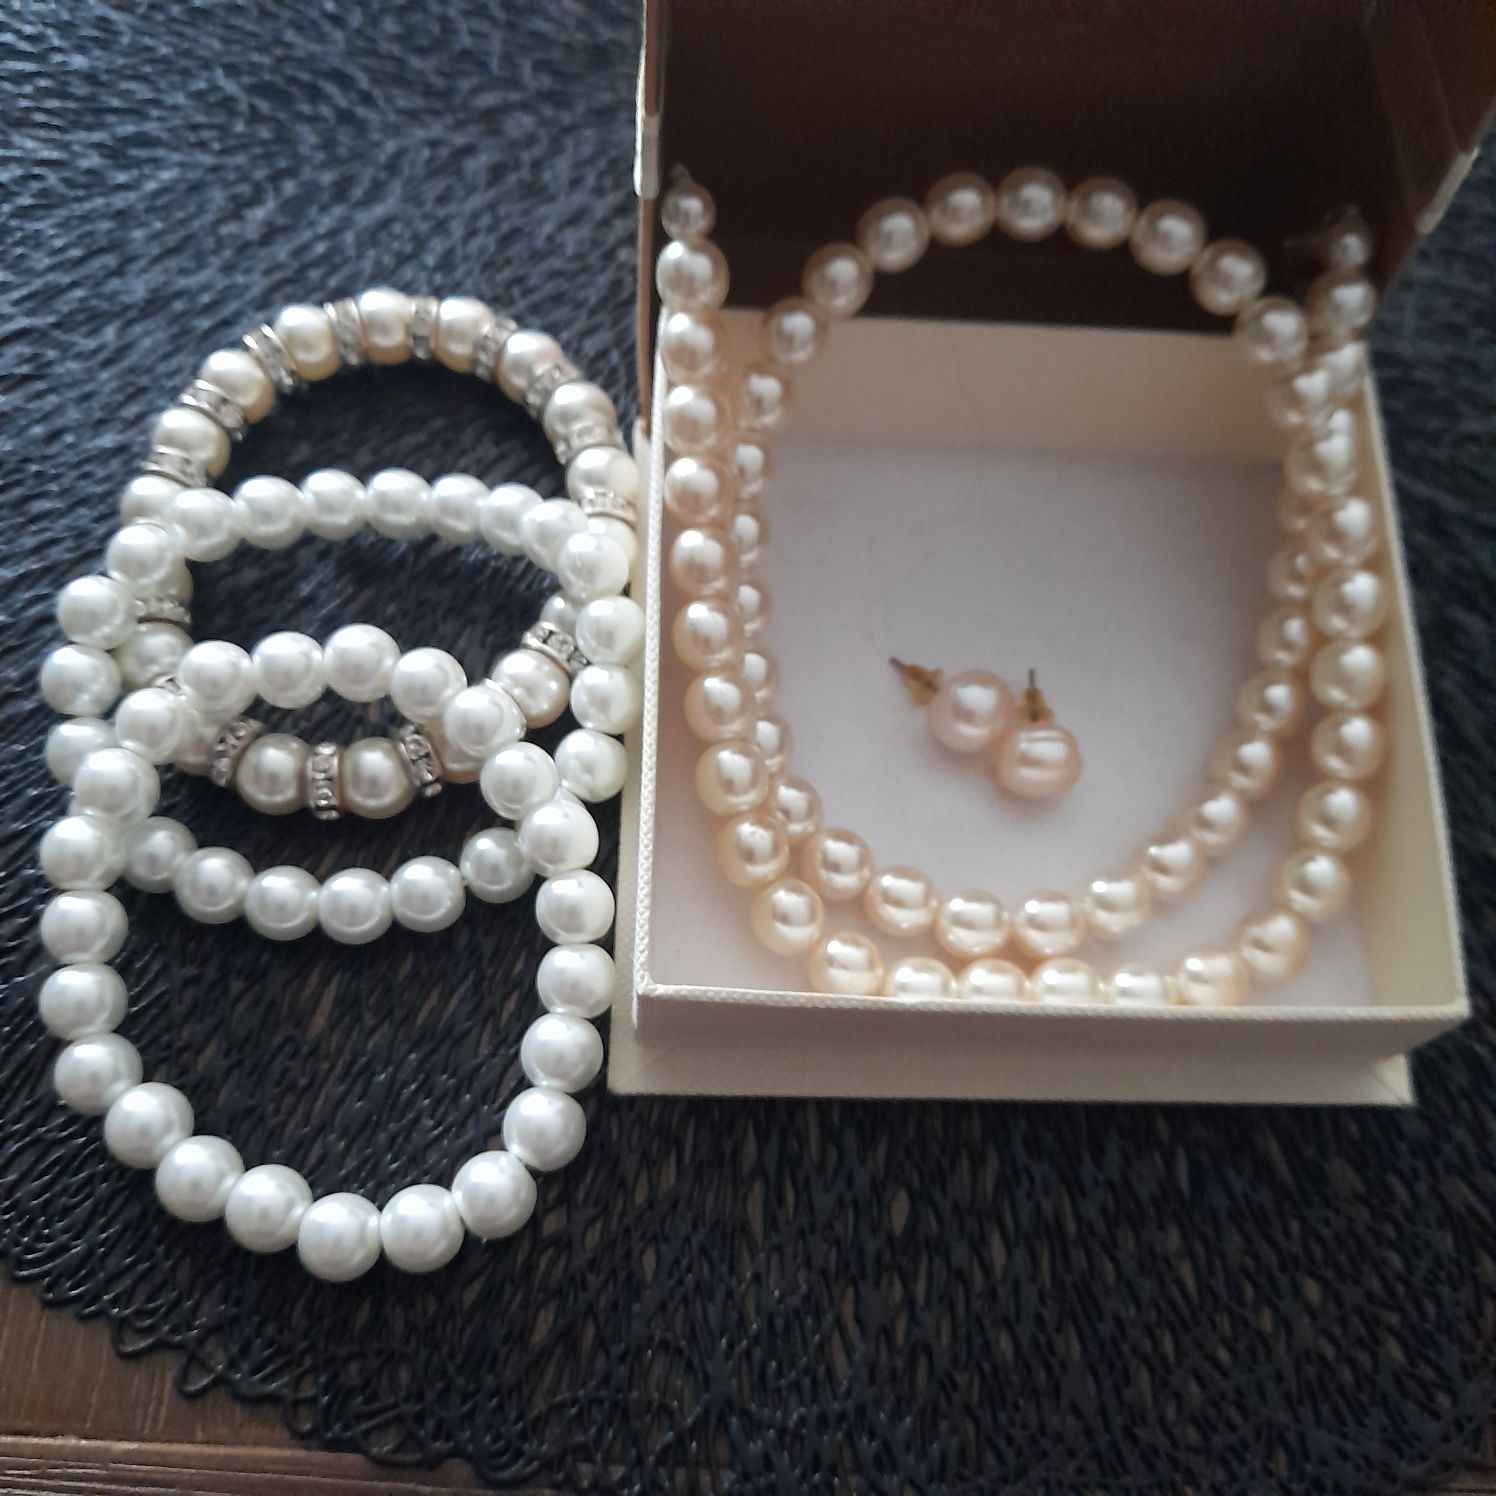 Zestaw biżuterii perłowy 3 elementy,perly